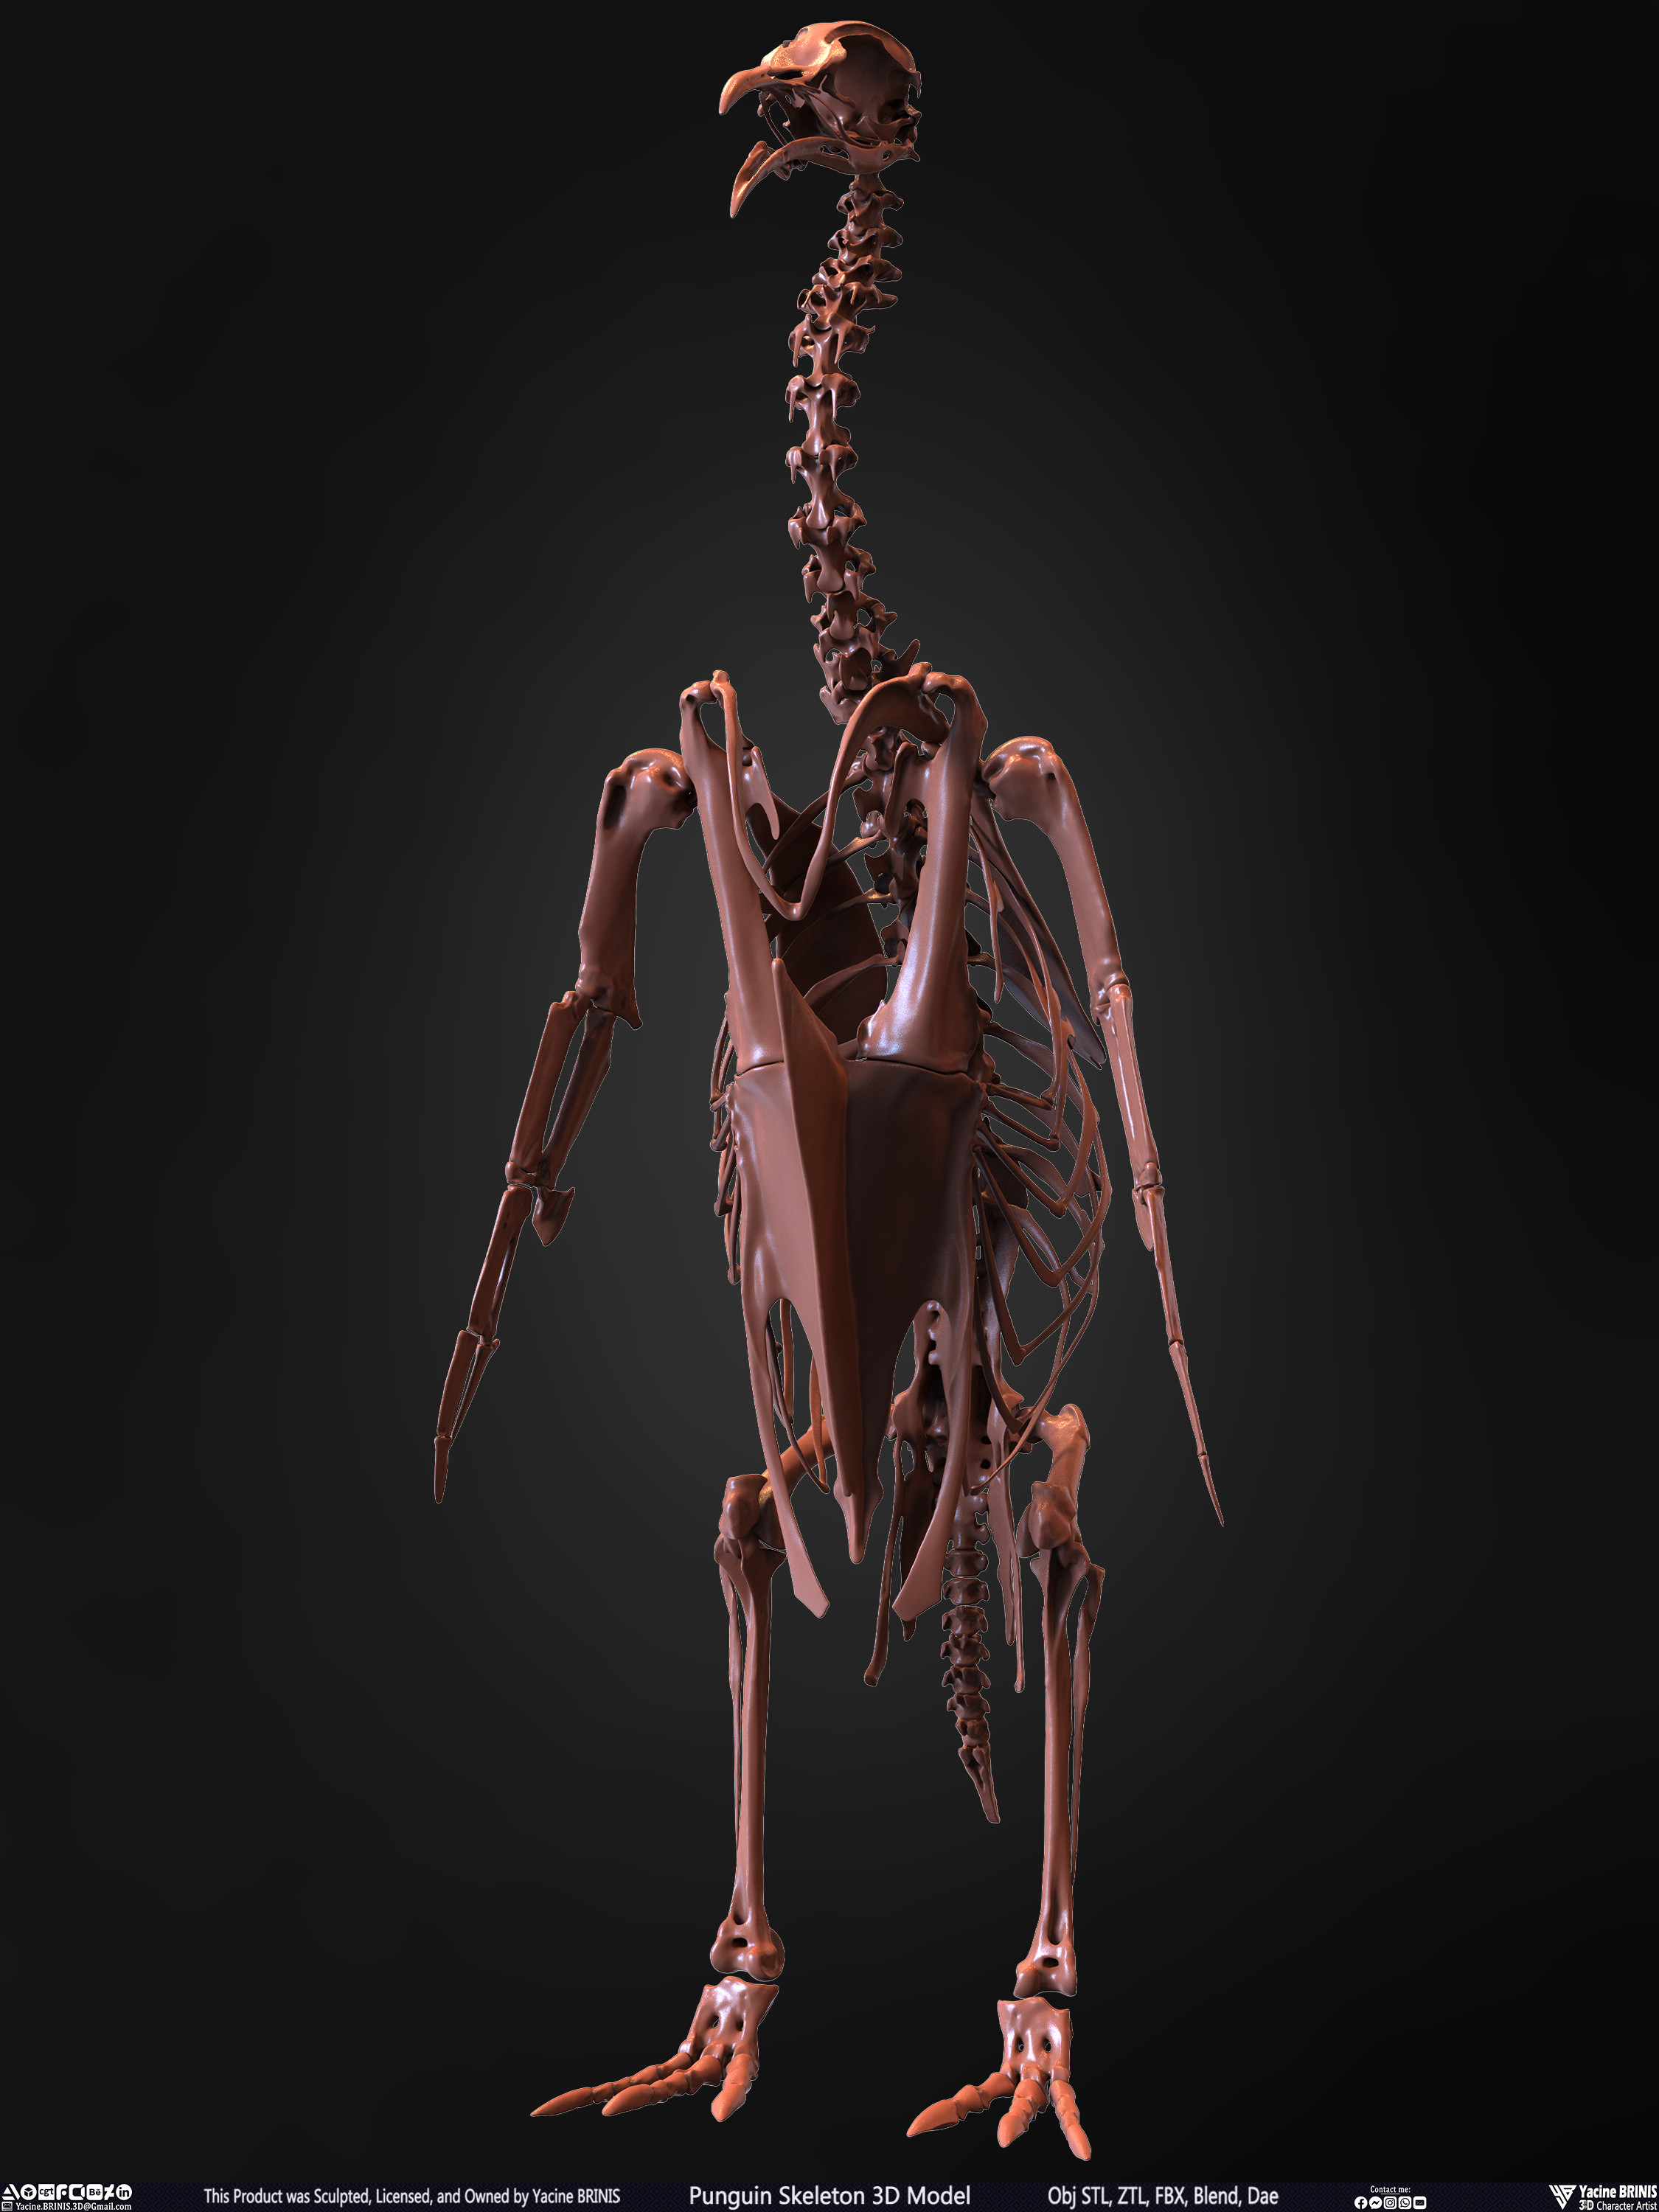 Penguin Skeleton 3D Model Sculpted by Yacine BRINIS Set 006